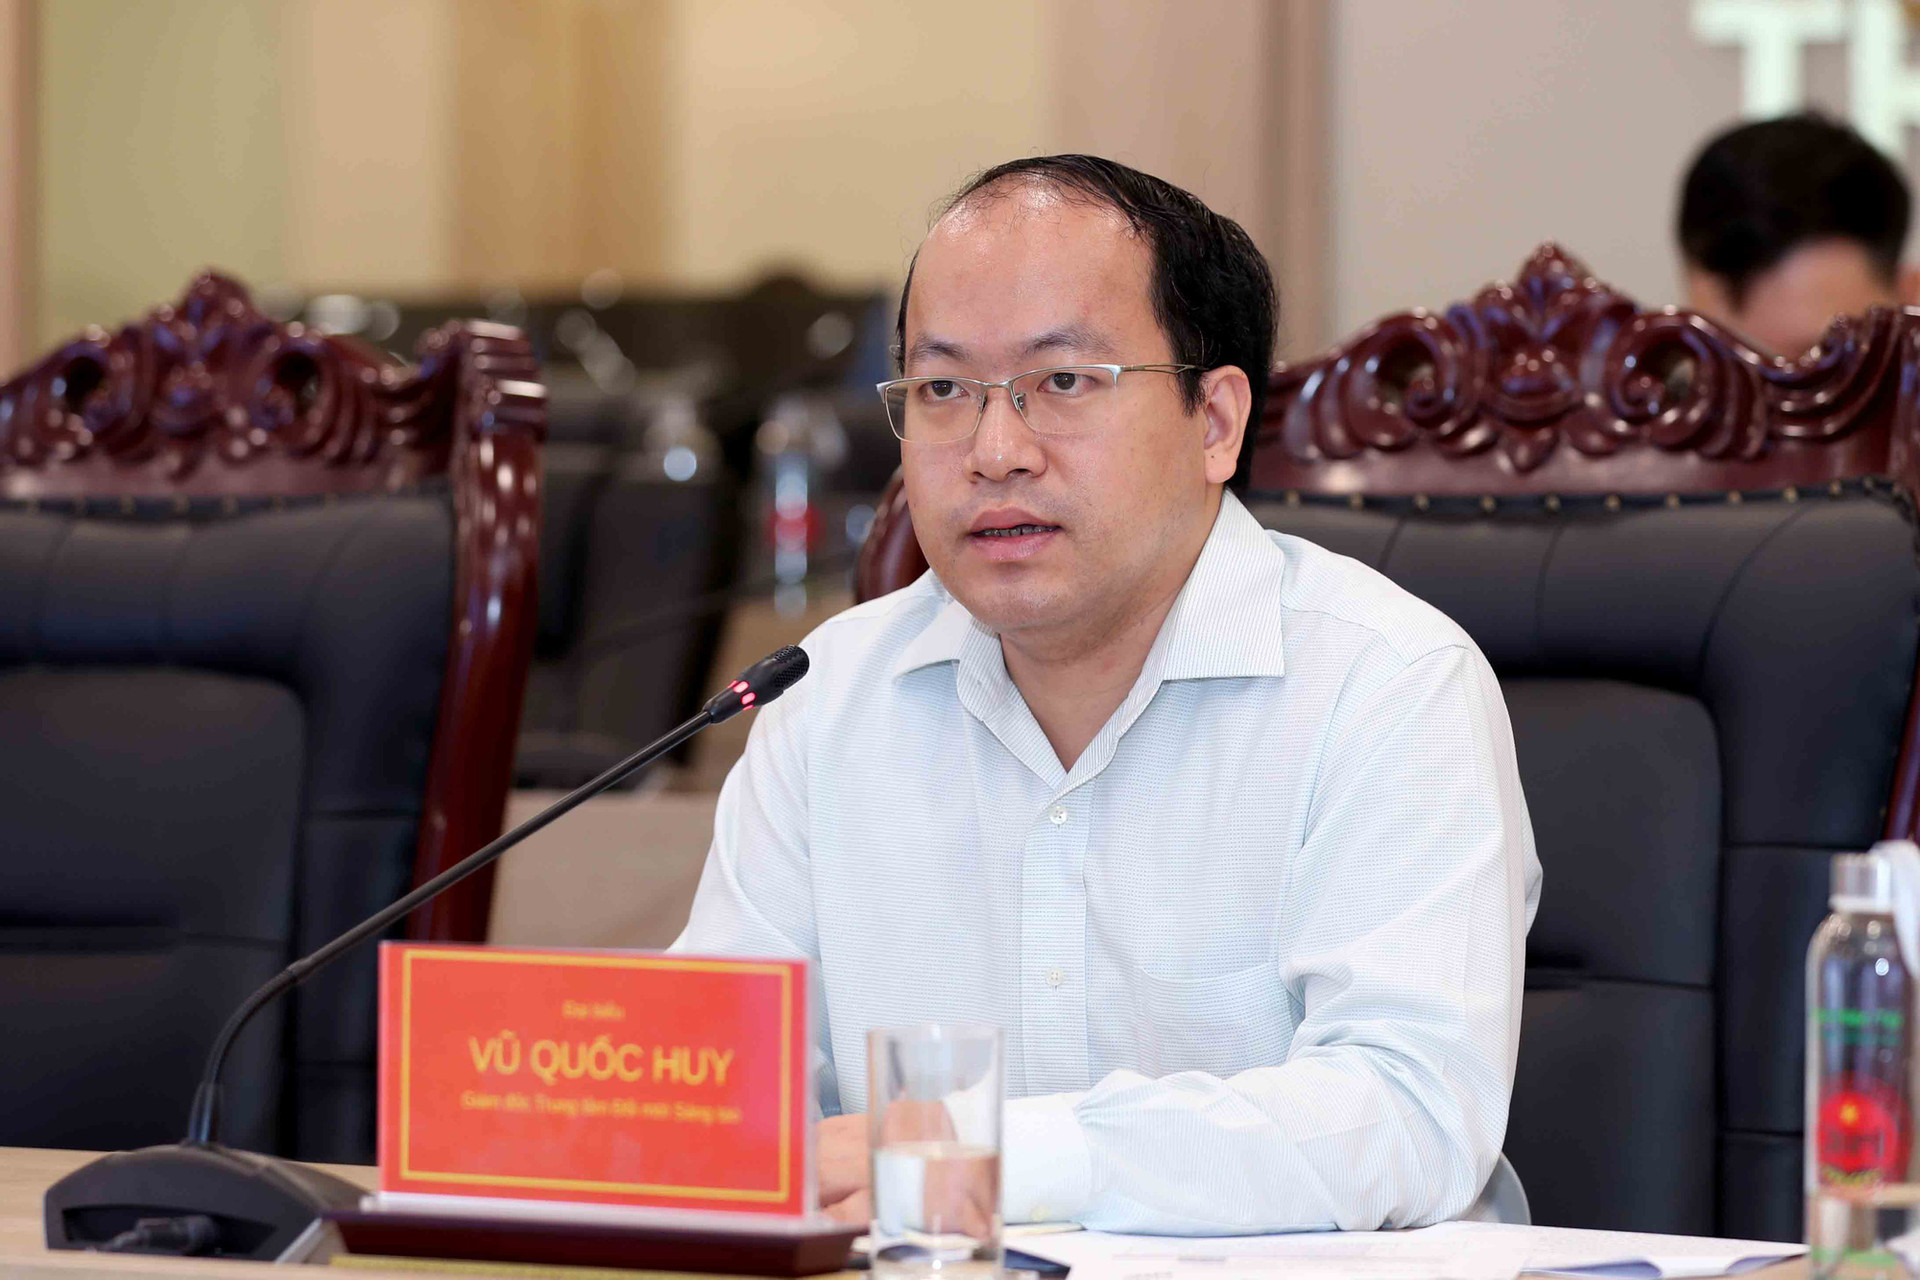 Phát triển nguồn nhân lực để Việt Nam tham gia sâu vào nền kinh tế số - Ảnh 3.